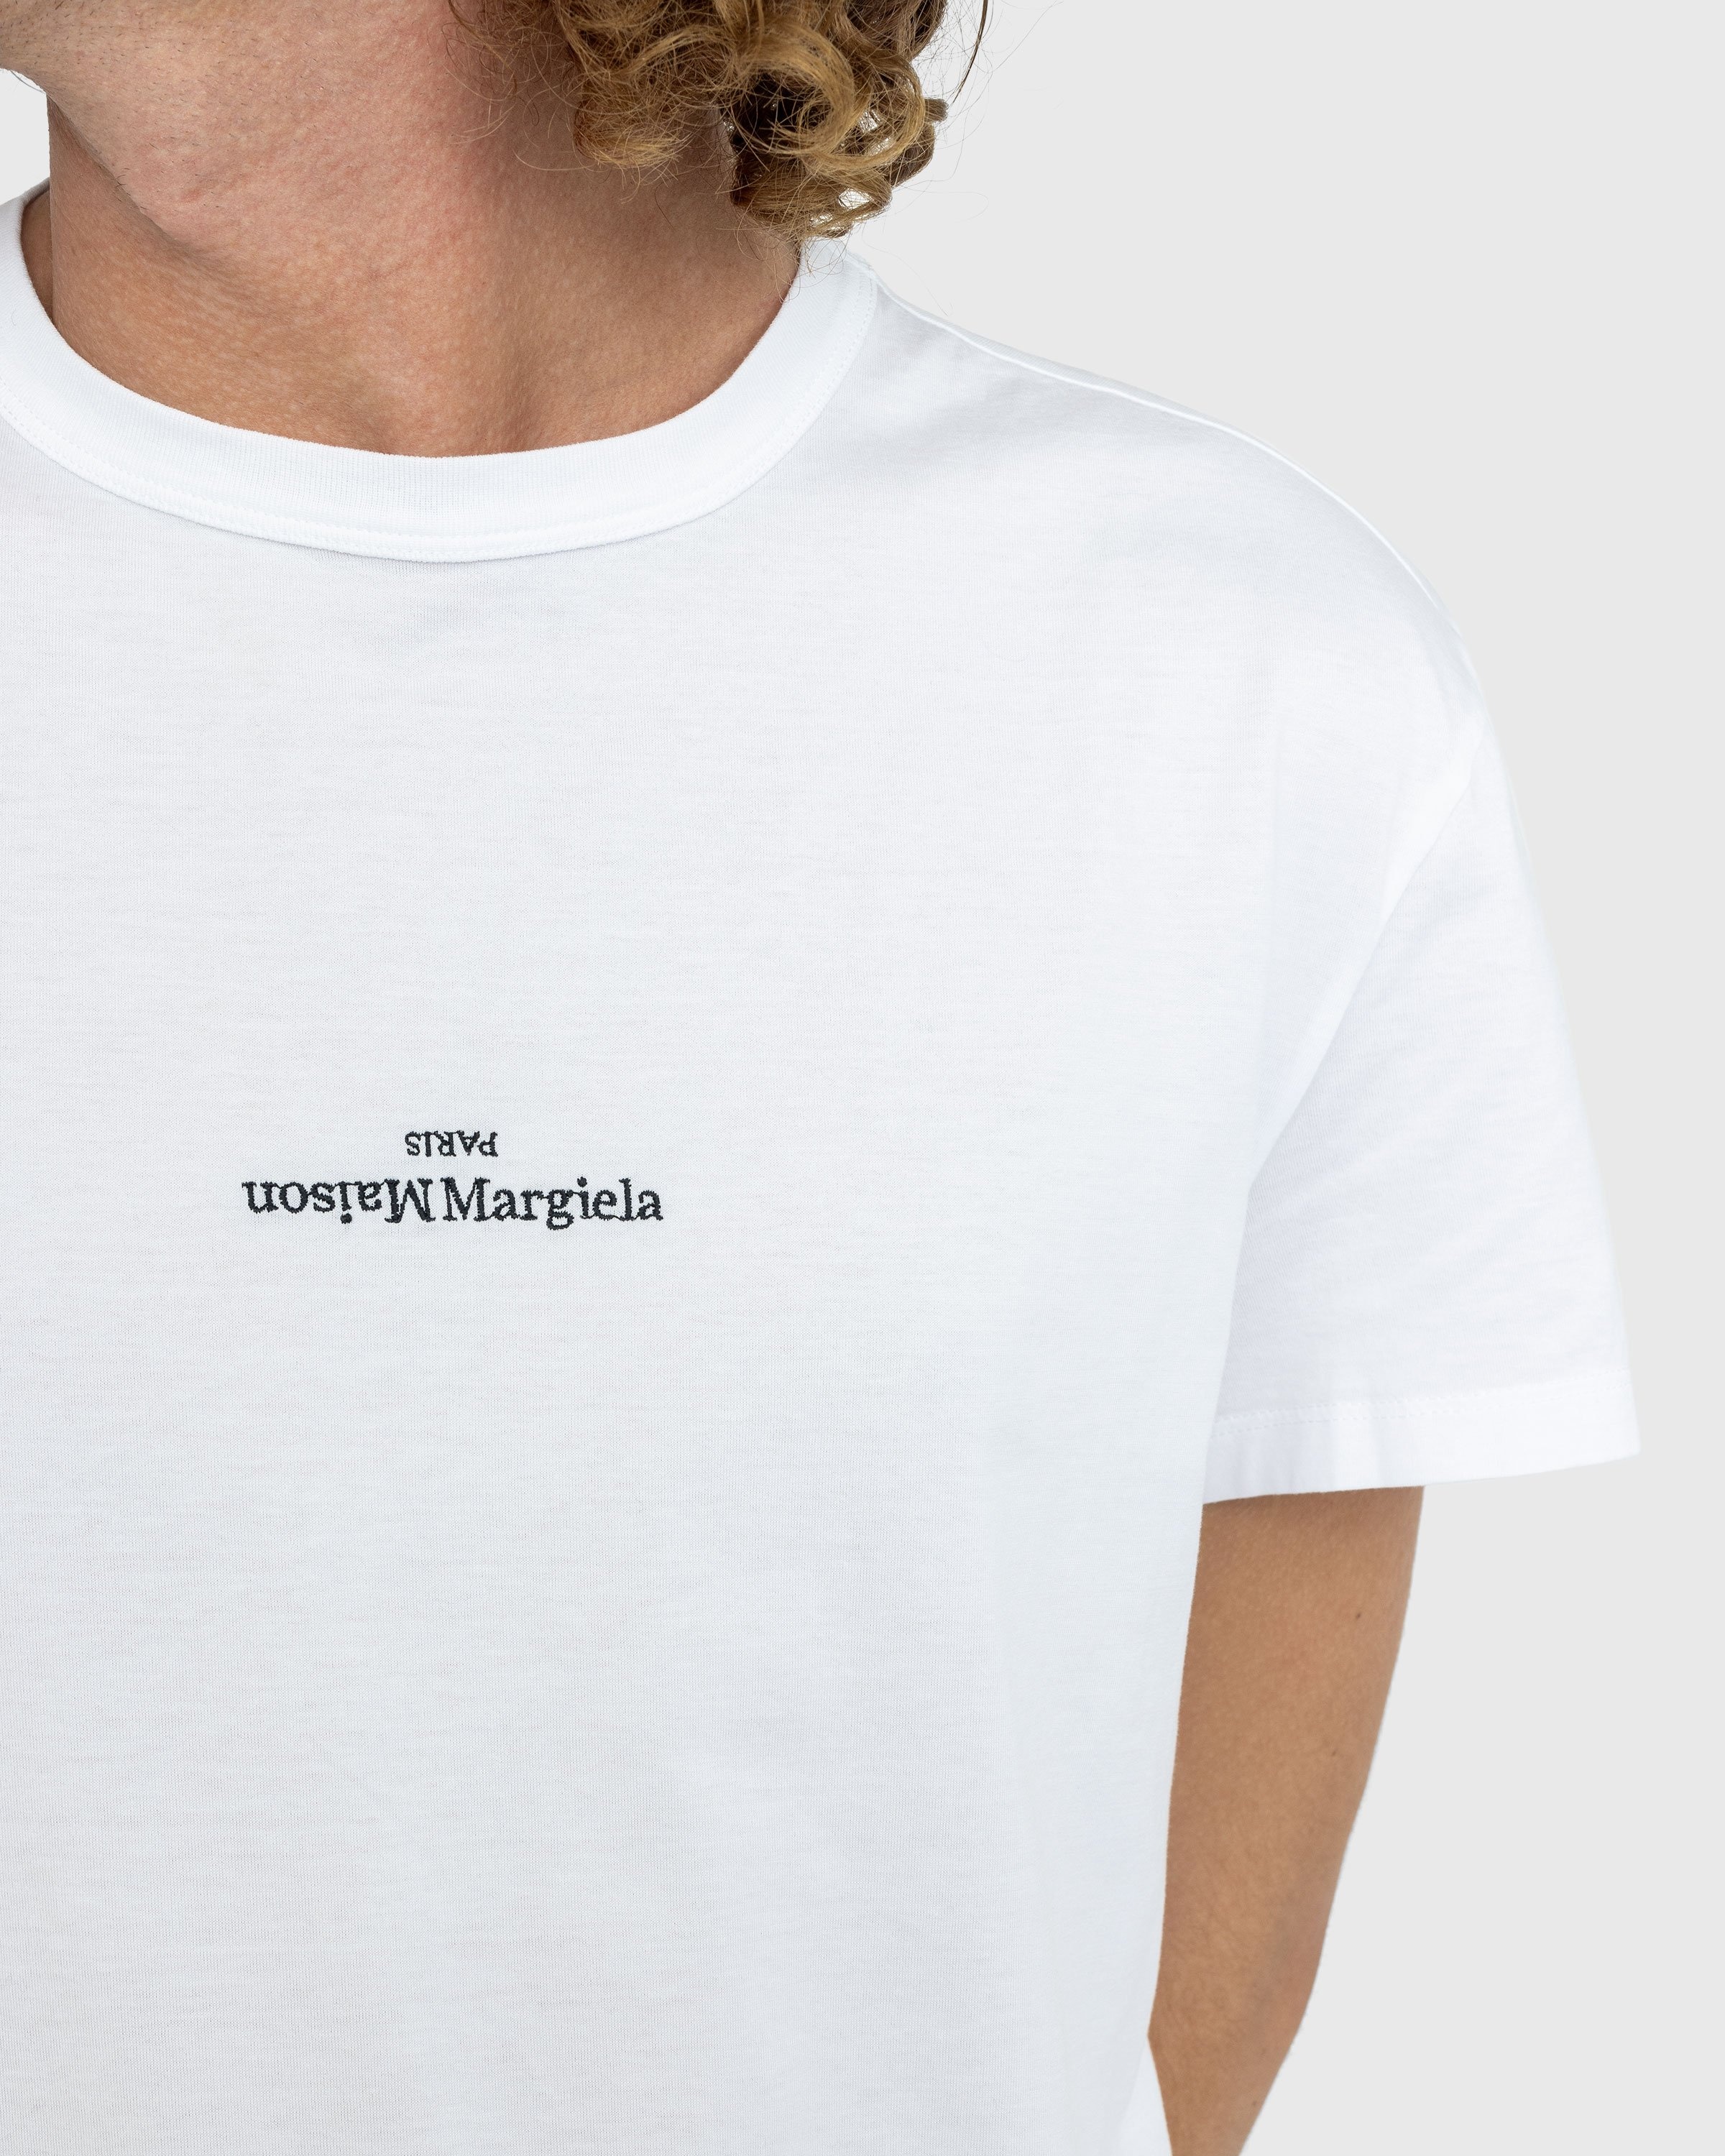 Maison Margiela – Logo T-Shirt White - T-shirts - White - Image 4